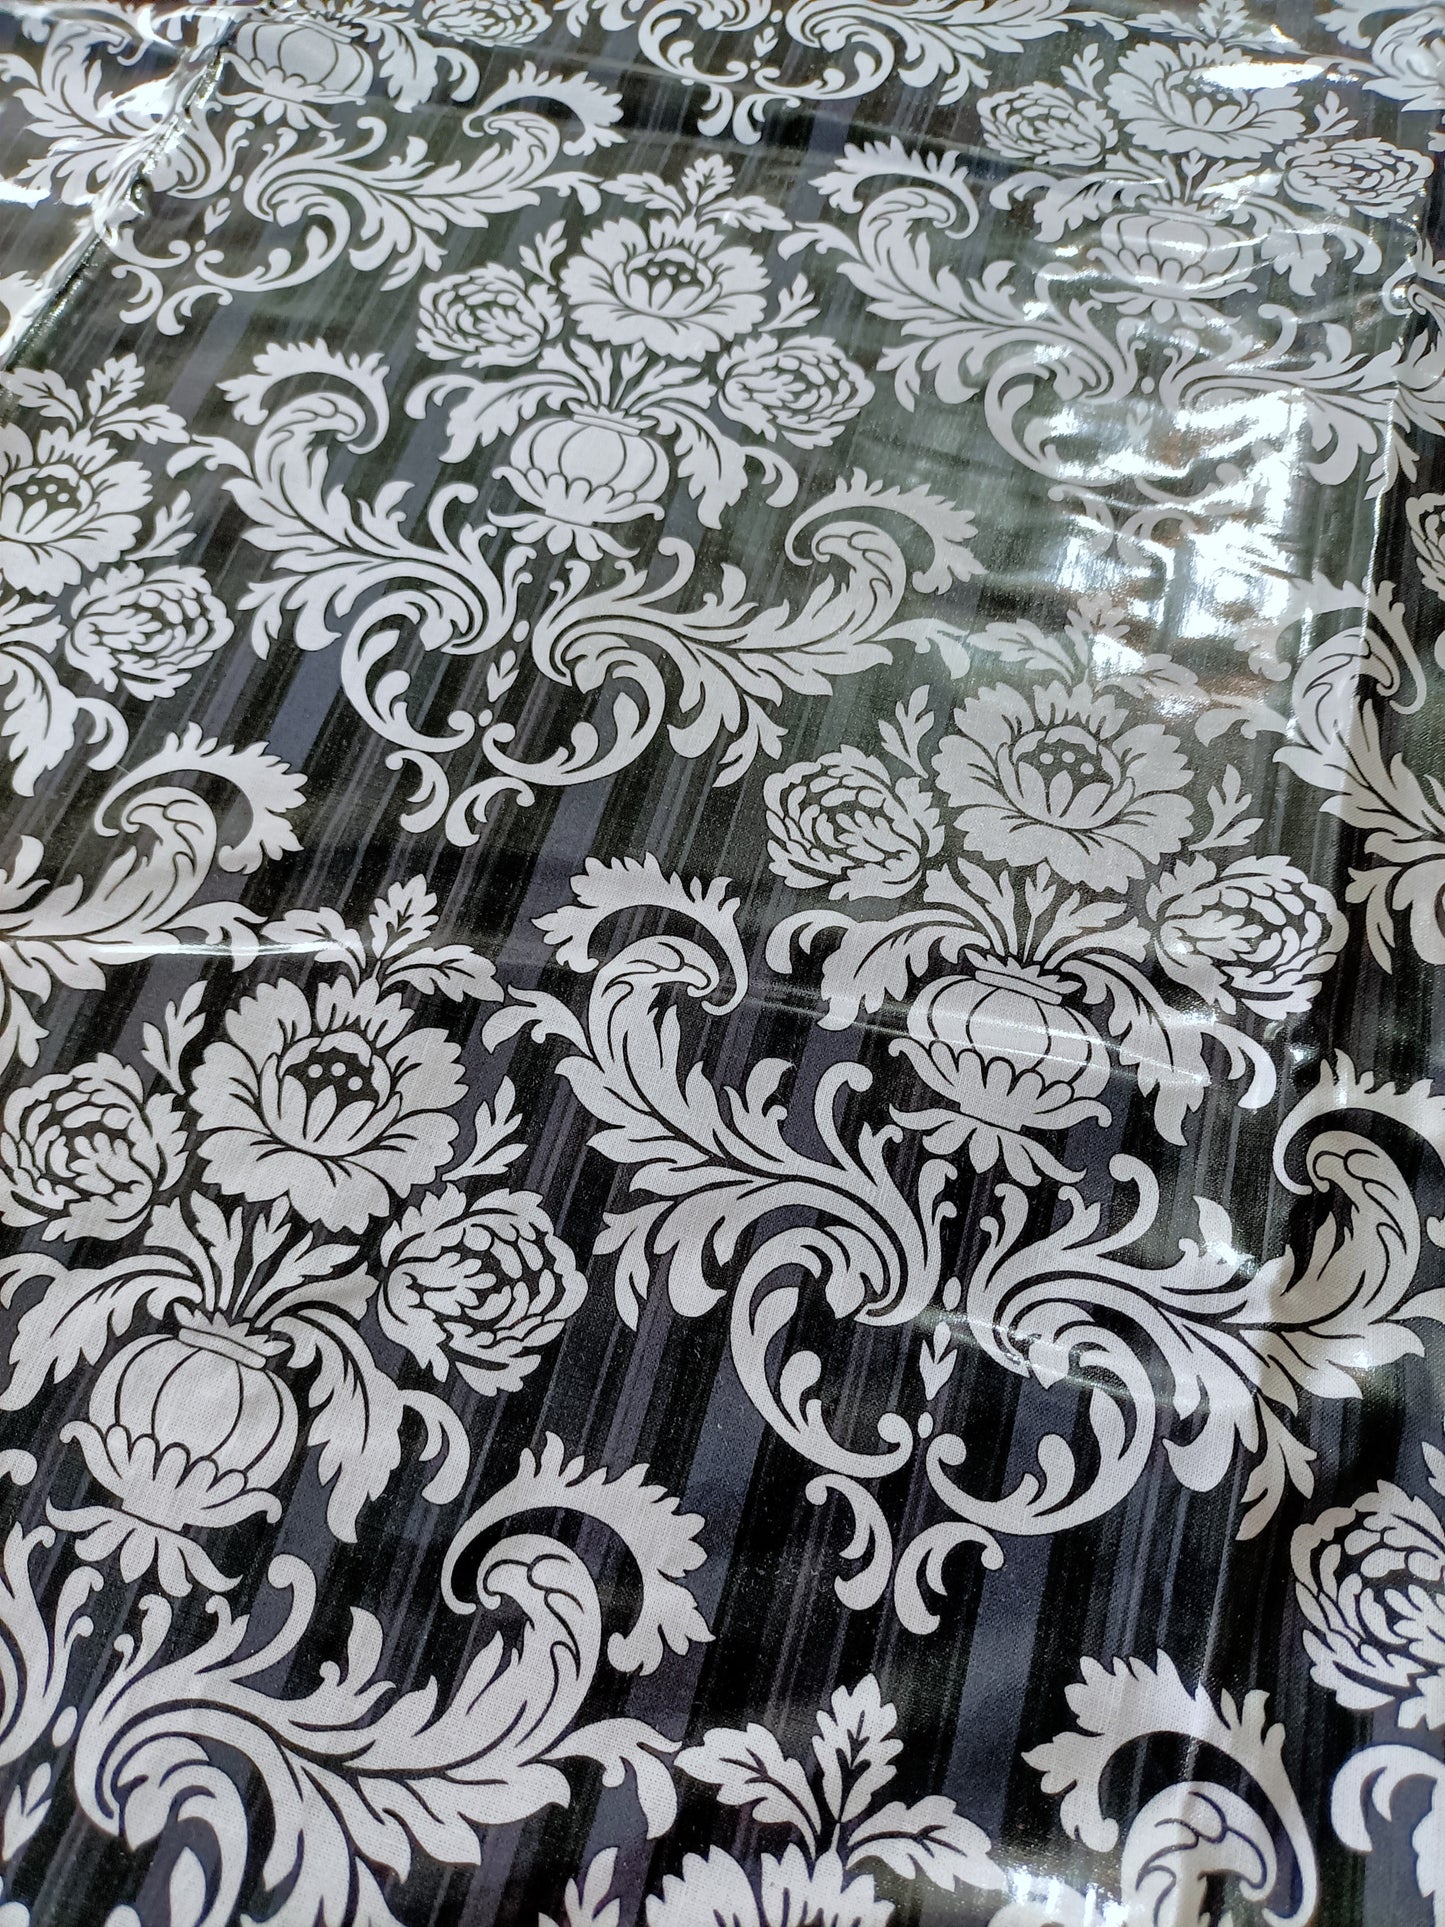 Laminated Cotton - Fleur Noir - 1m x 90cm Remnant - Fabric Rescue